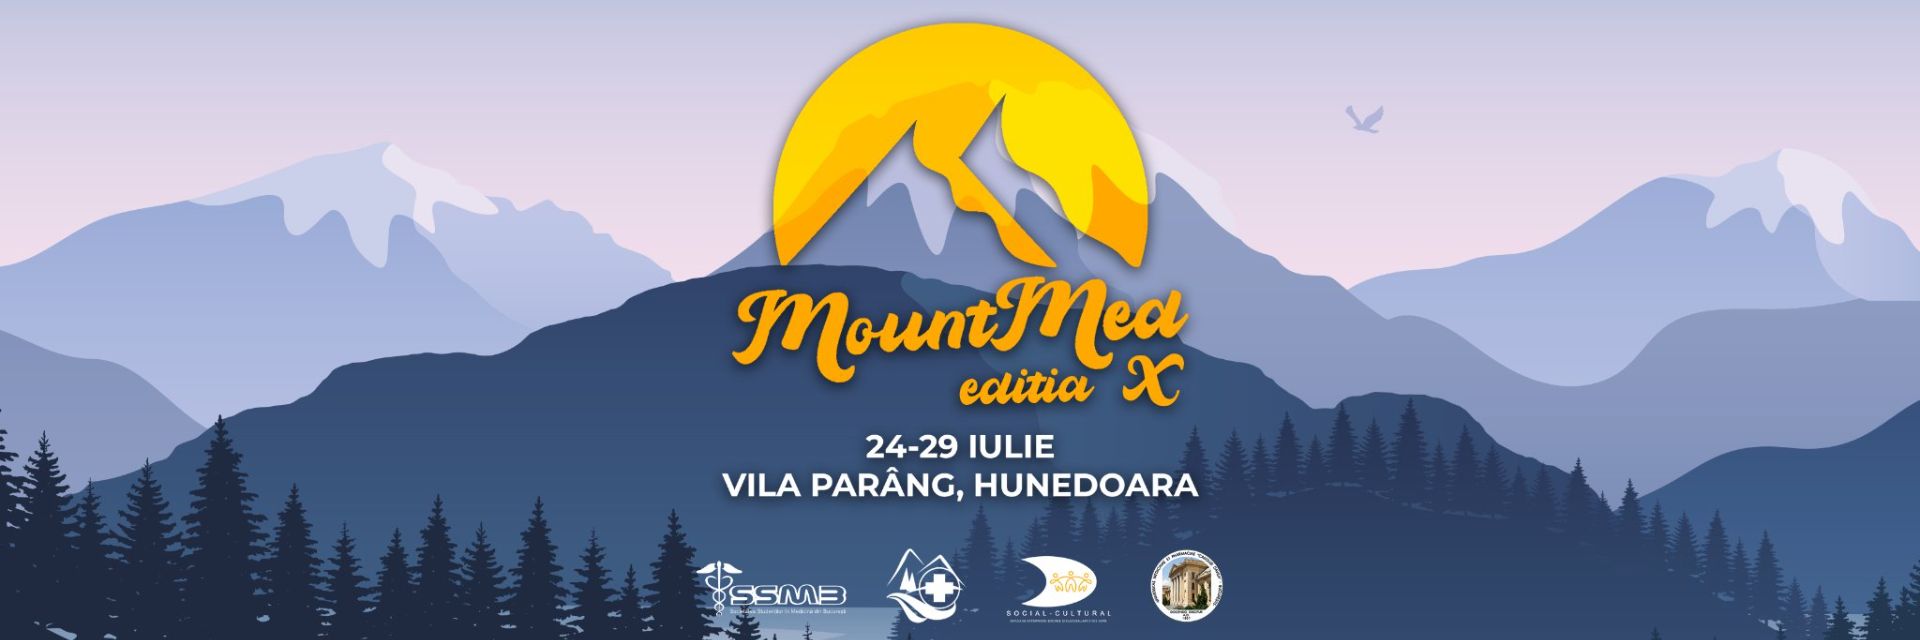 Proiectul MountMed, organizat cu sprijinul UMFCD, are loc în iulie